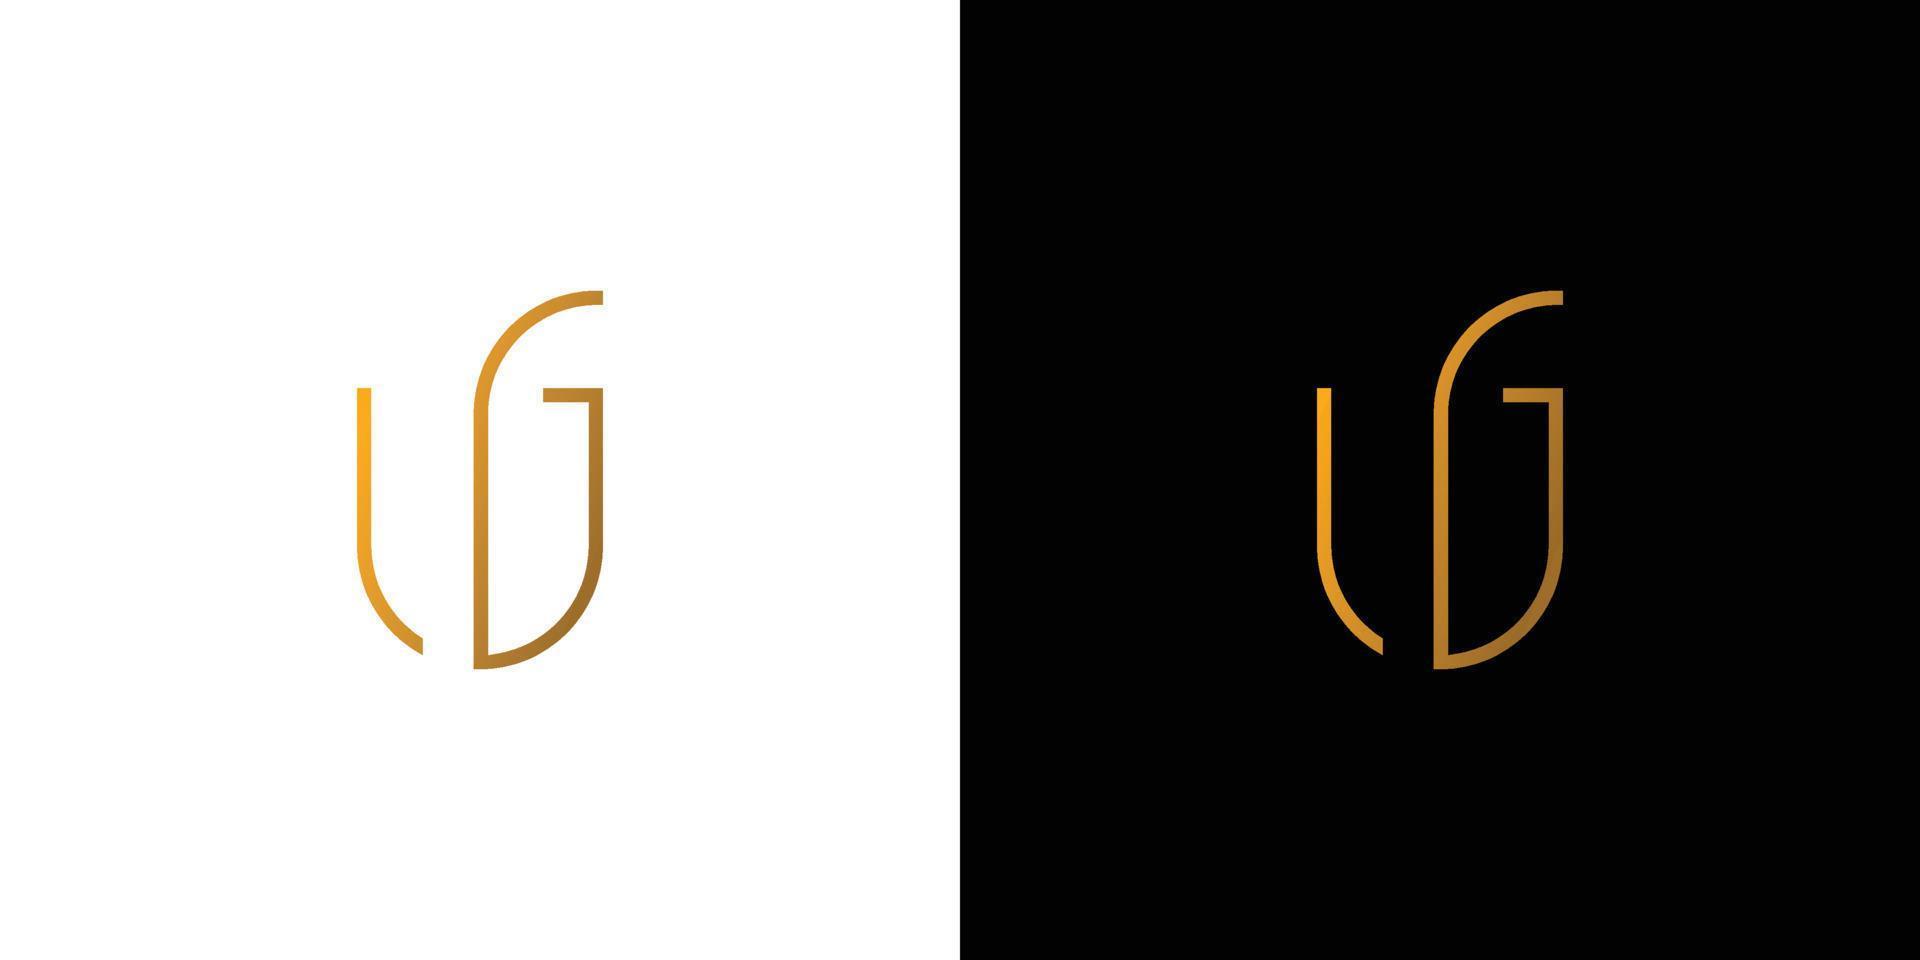 moderno y lujoso ug letra inicial logo diseño vector